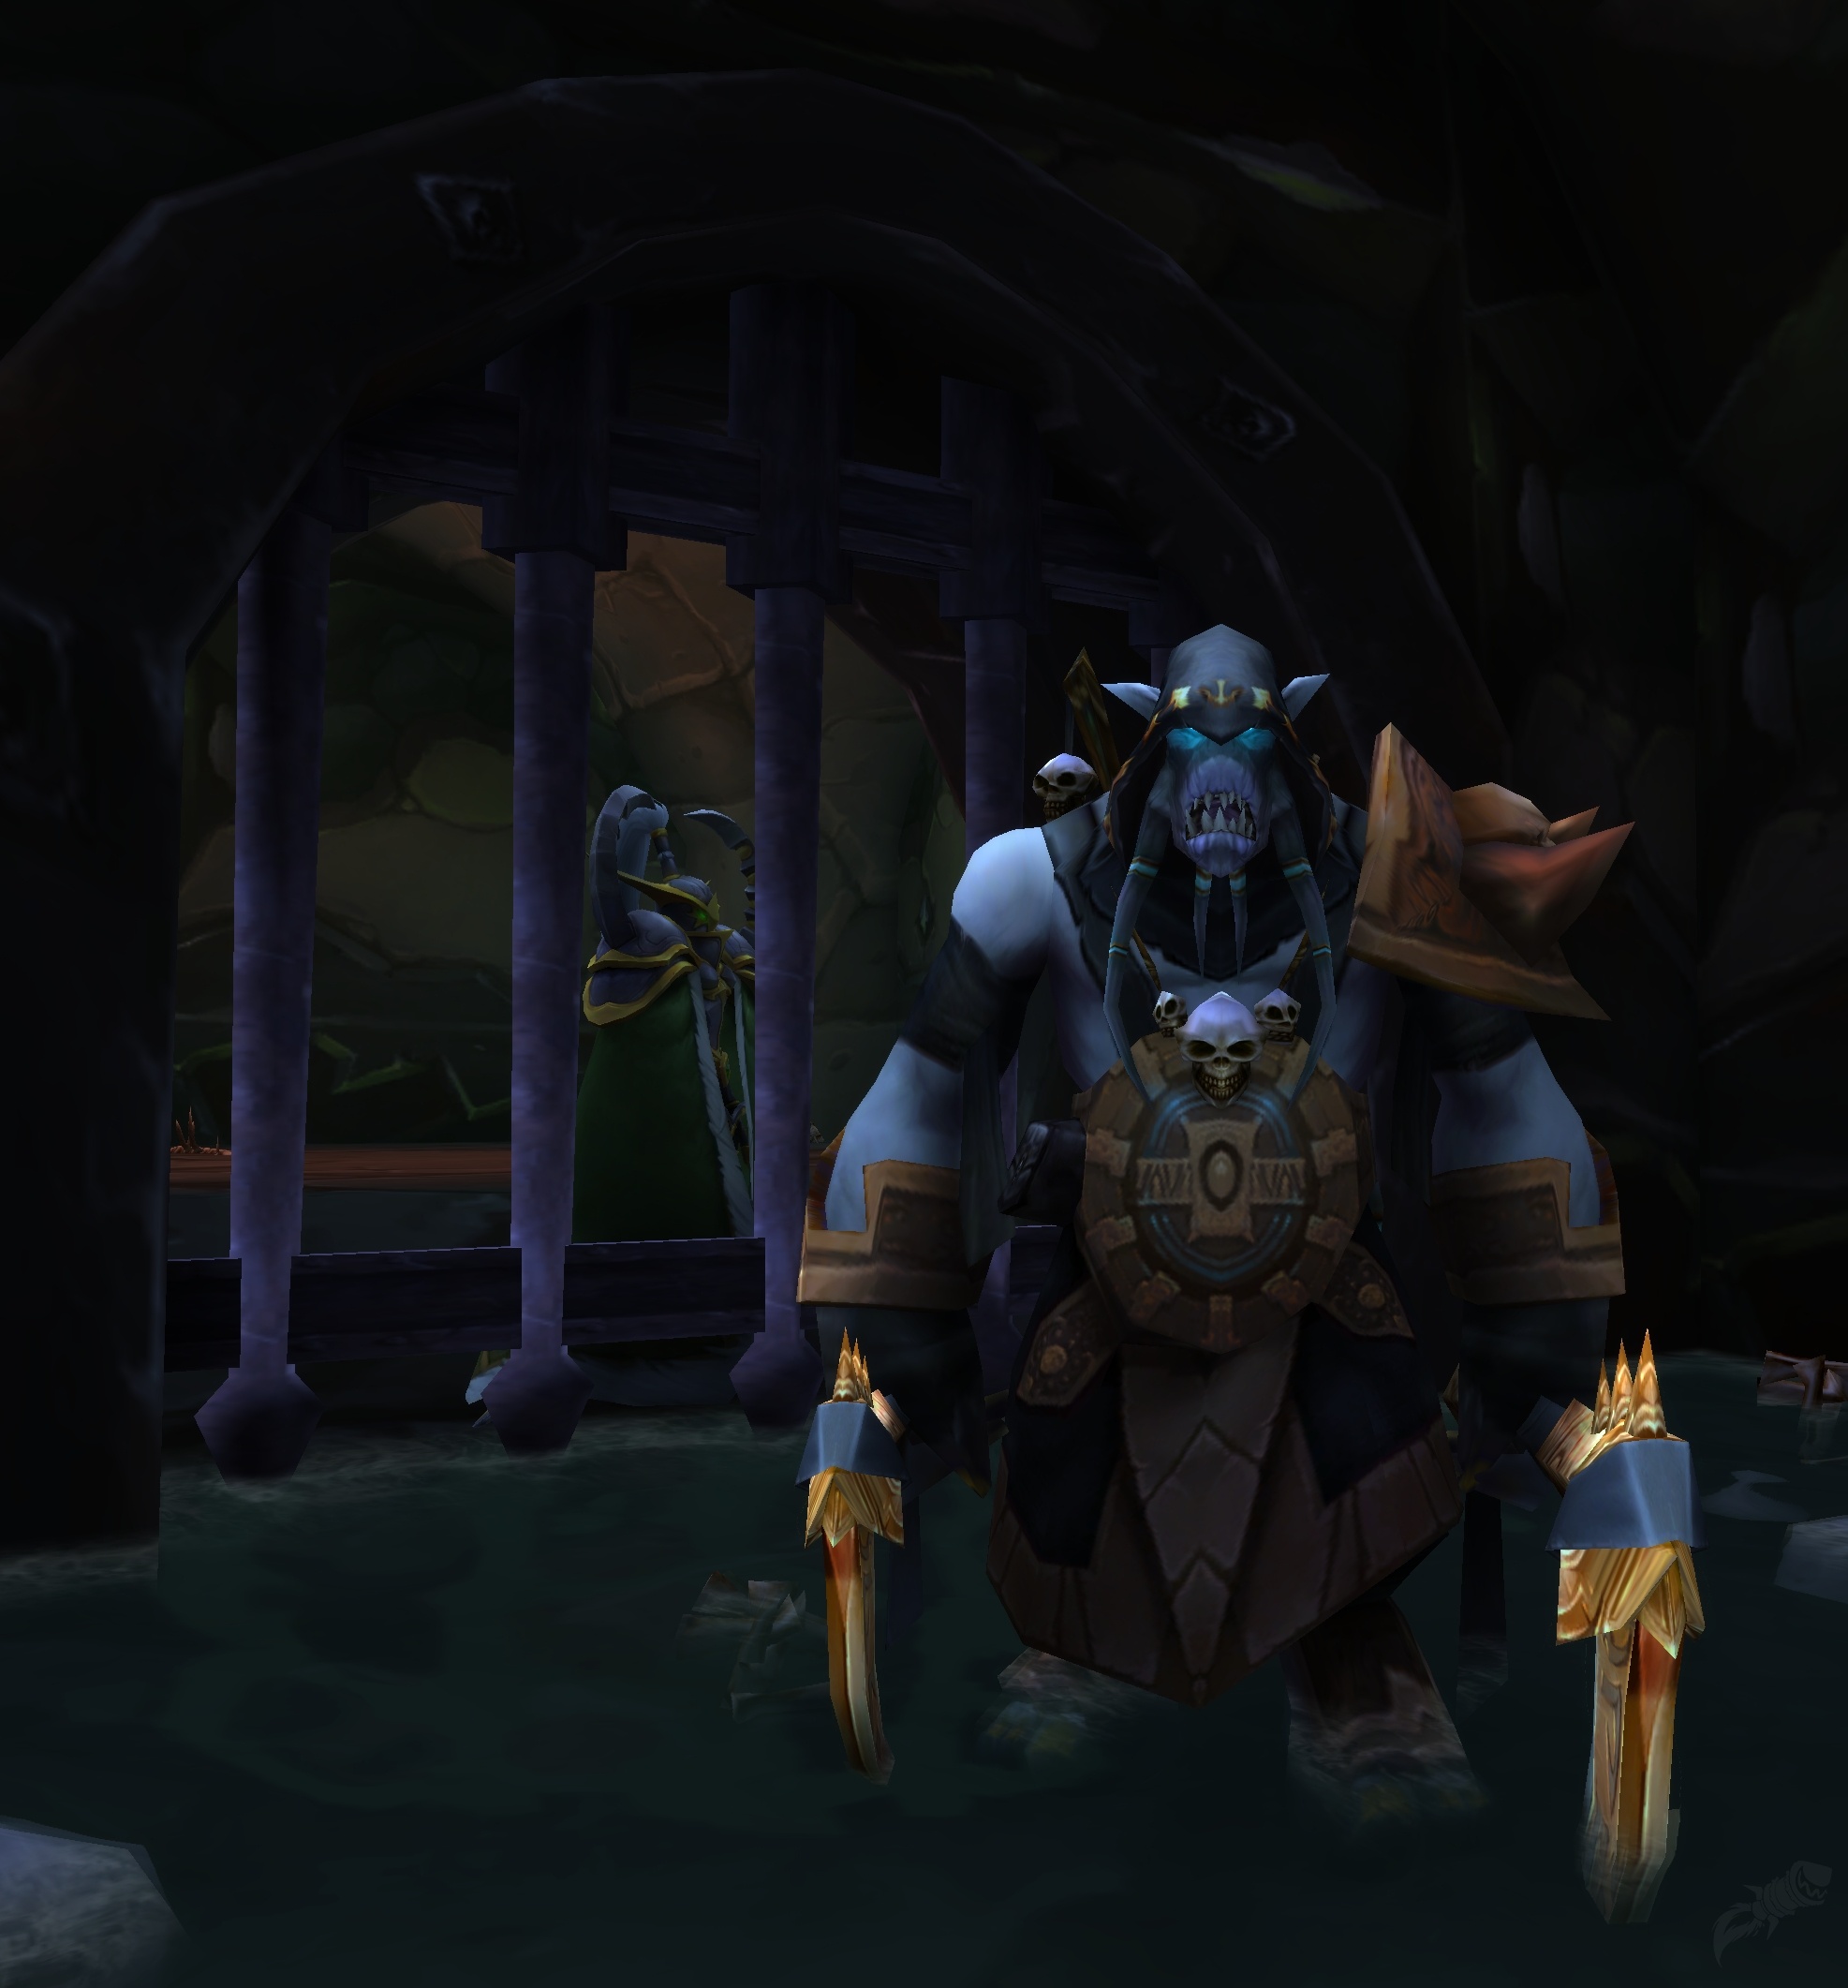 A Cifra da Danação - Missão - World of Warcraft